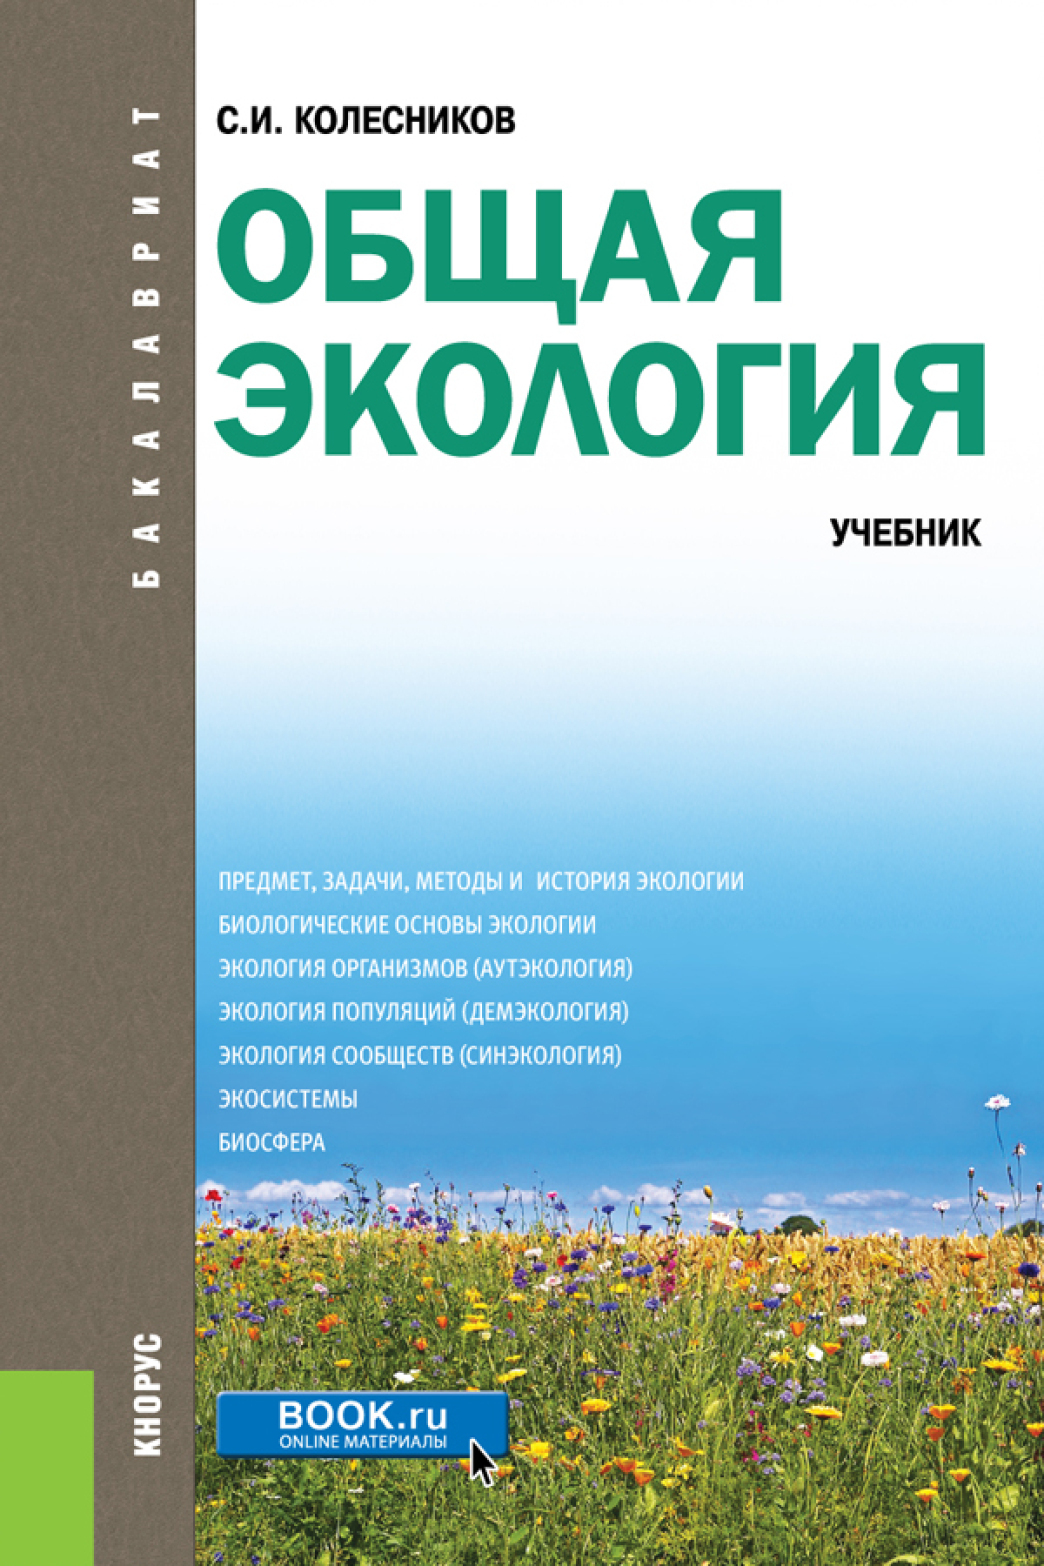 Ecology book. Книги по экологии. Книги про экологию. Экология учебник. Экология учебное пособие.